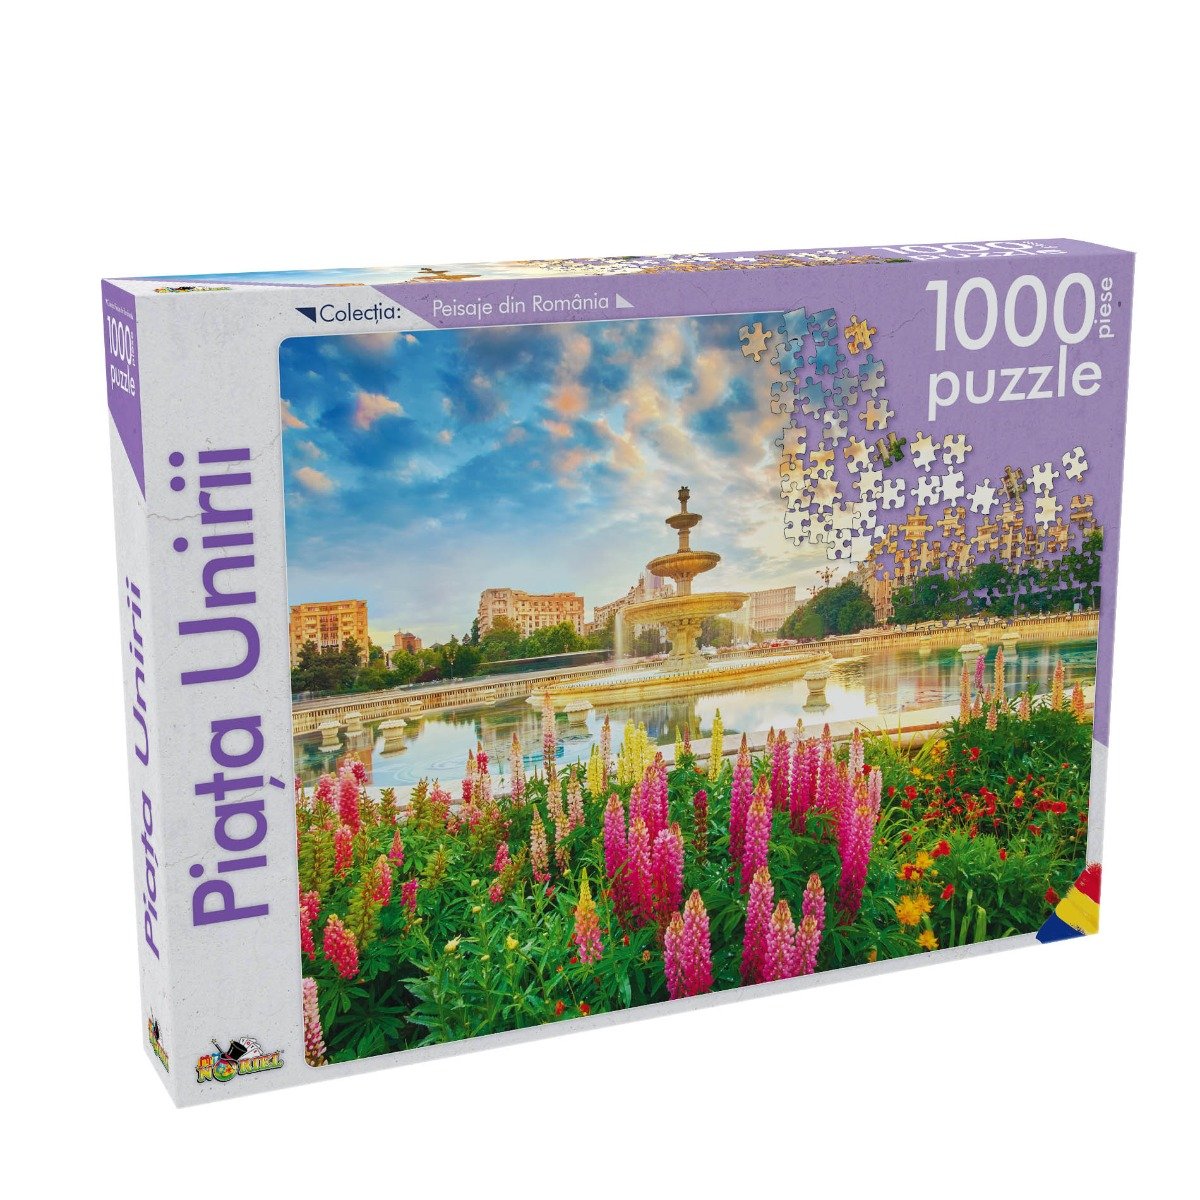 Poze Puzzle Noriel - Peisaje din Romania - Piata Unirii, 1000 Piese